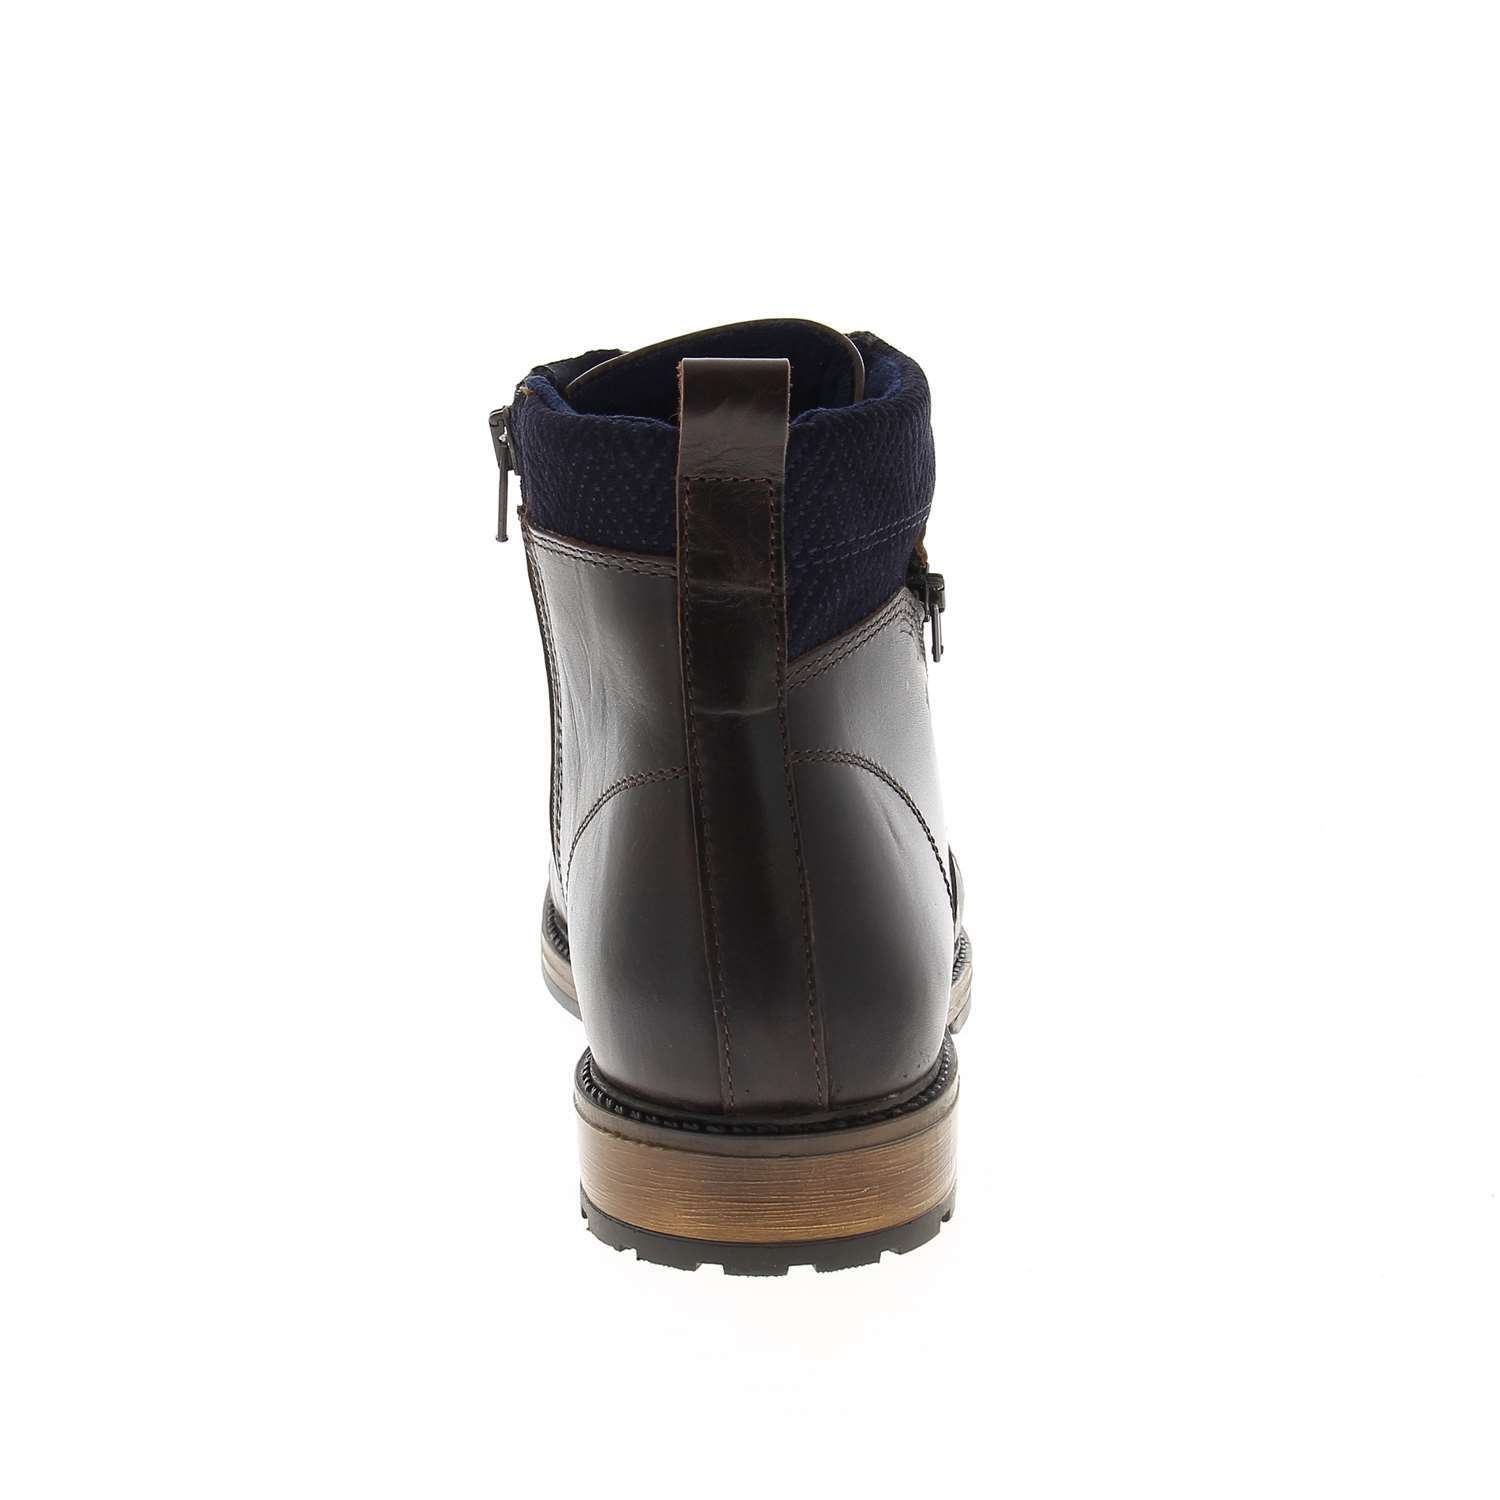 04 - HAMAM - CLEON - Boots et bottines - Cuir